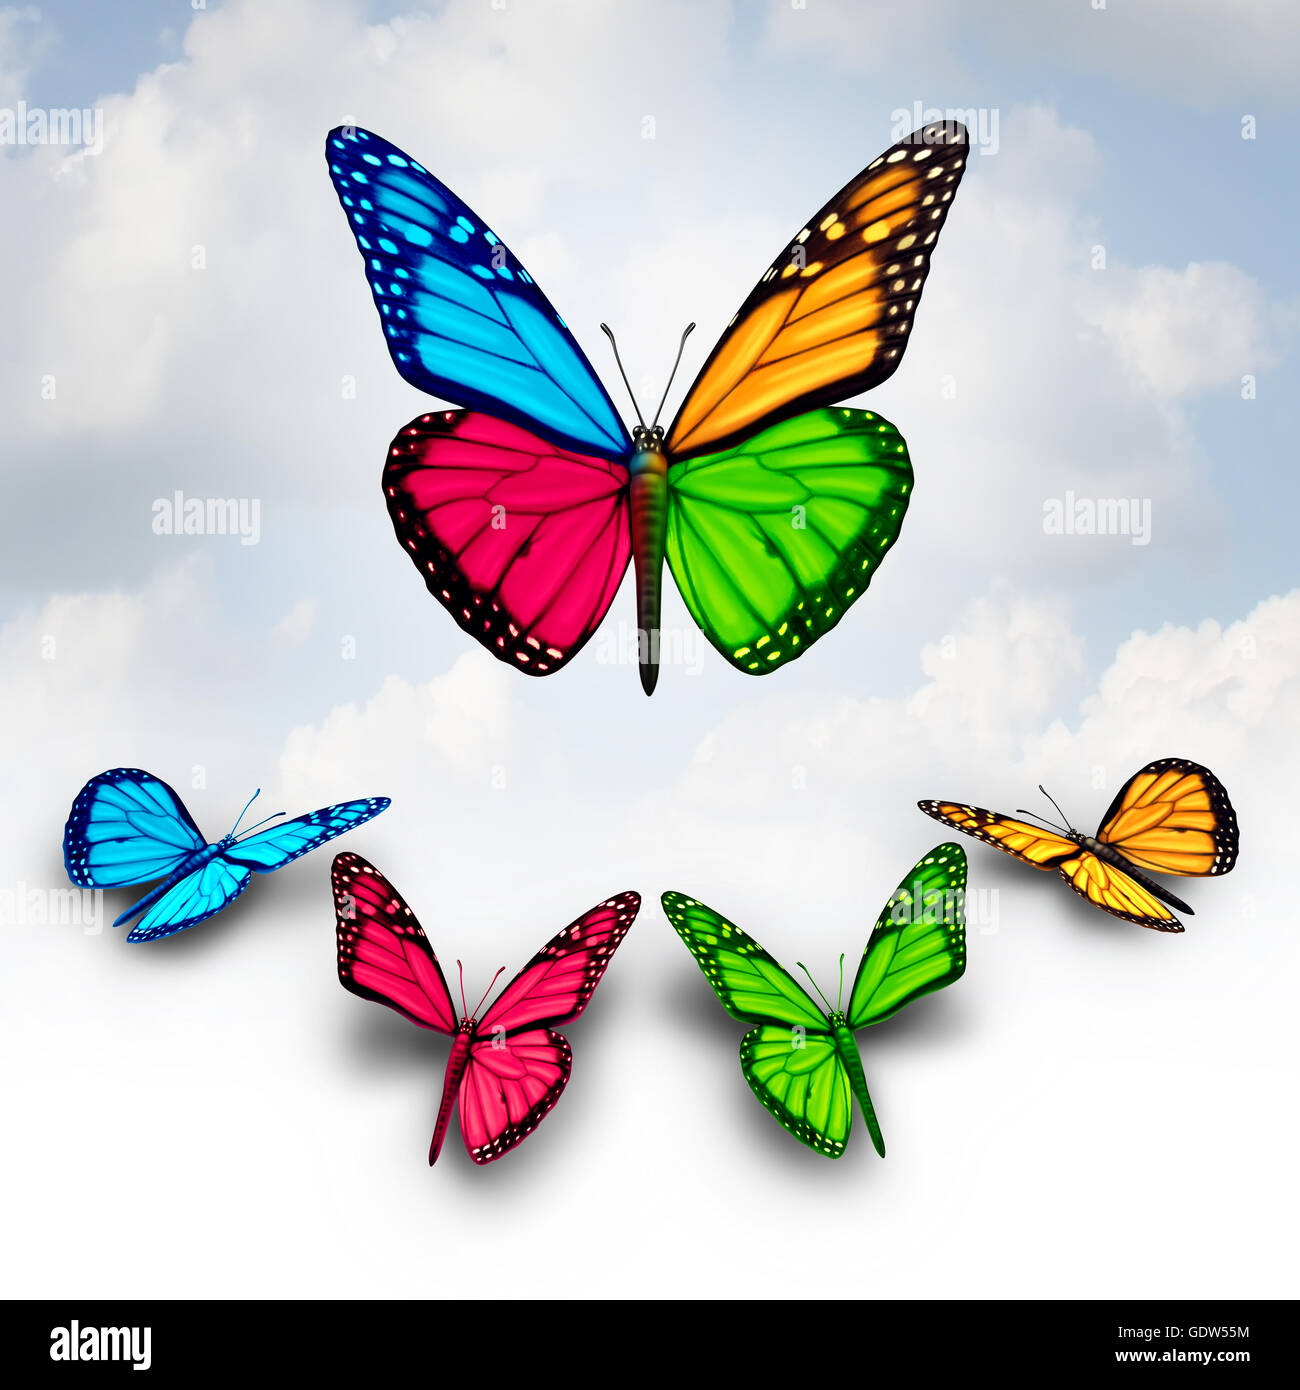 Zusammenarbeit-Business-Konzept der Erfolg als Team diverse Schmetterlinge Zusammenarbeit gemeinsam durch Spenden oder geben einen Teil der Flügel, ein stärkeres erfolgreiche Organisation Symbol als 3D Illustration zu bauen. Stockfoto